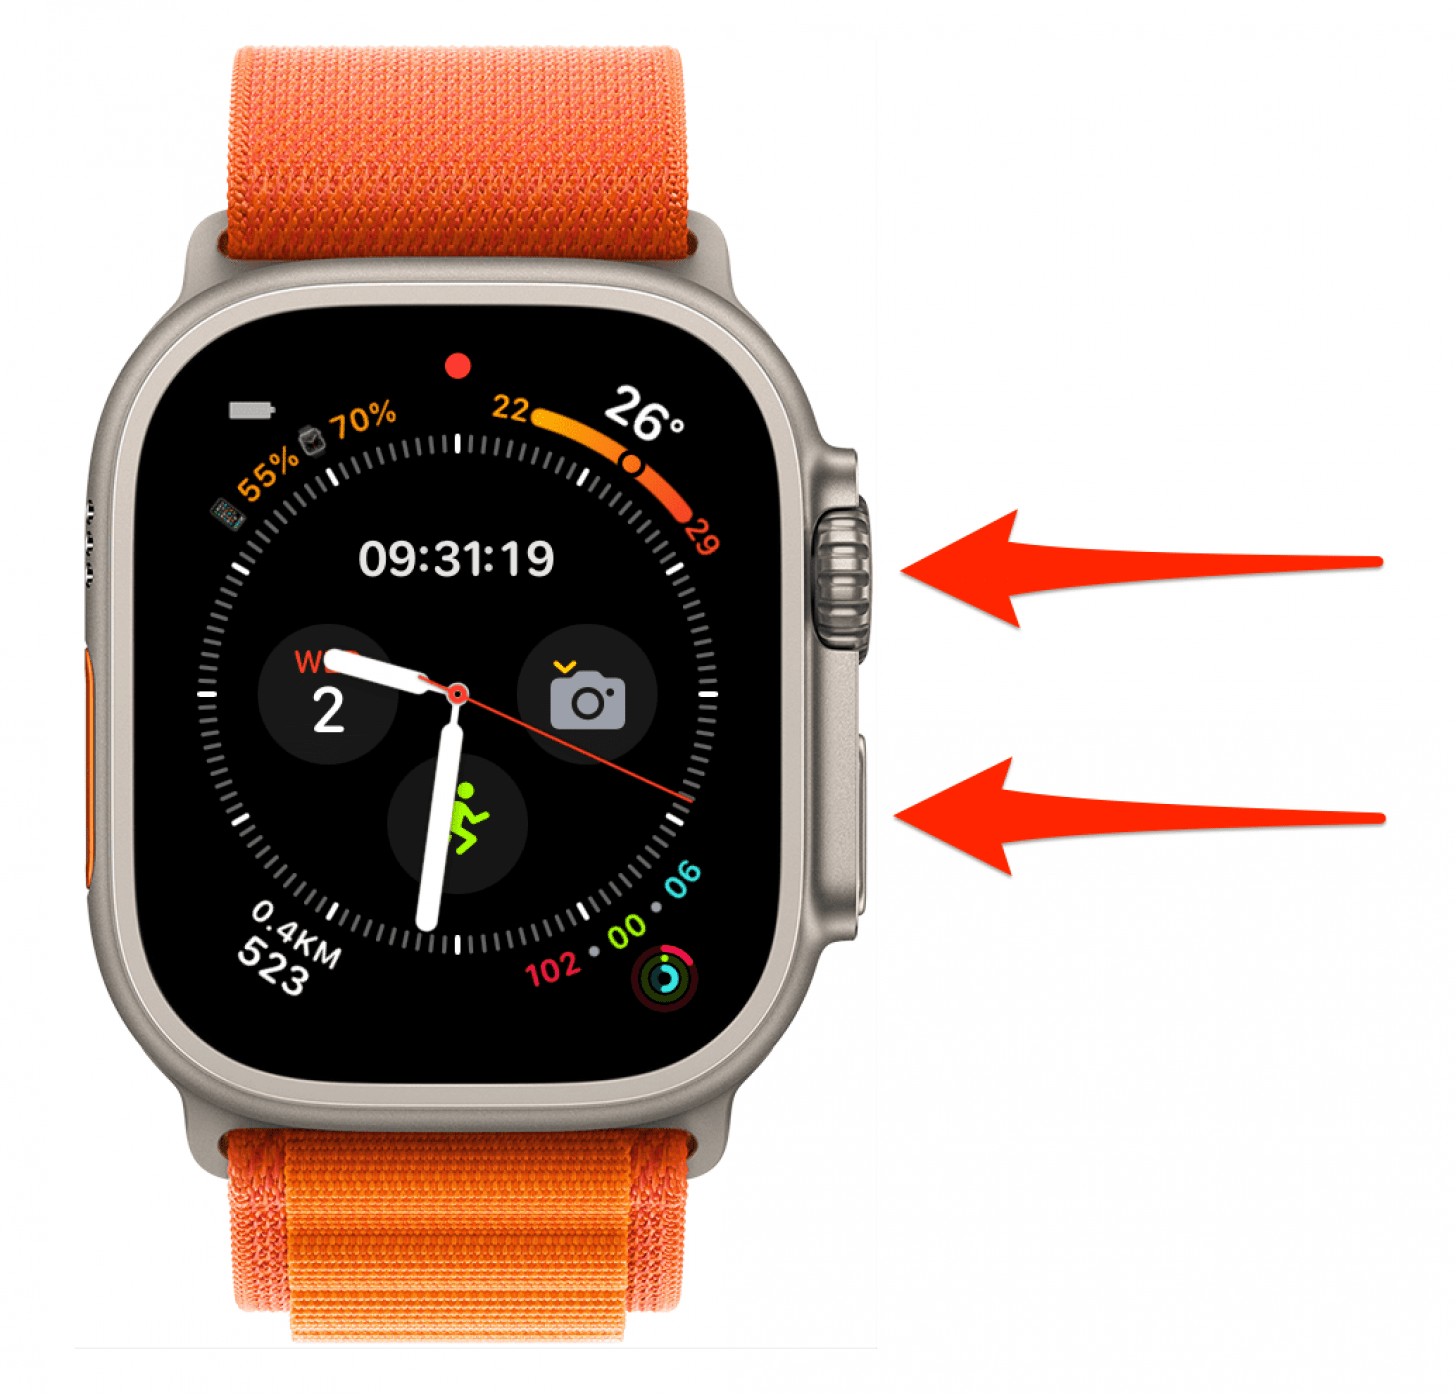 Pour forcer le redémarrage ou la réinitialisation matérielle de l'Apple Watch : maintenez simultanément le bouton latéral et la couronne numérique pendant 10 secondes, puis relâchez-les.